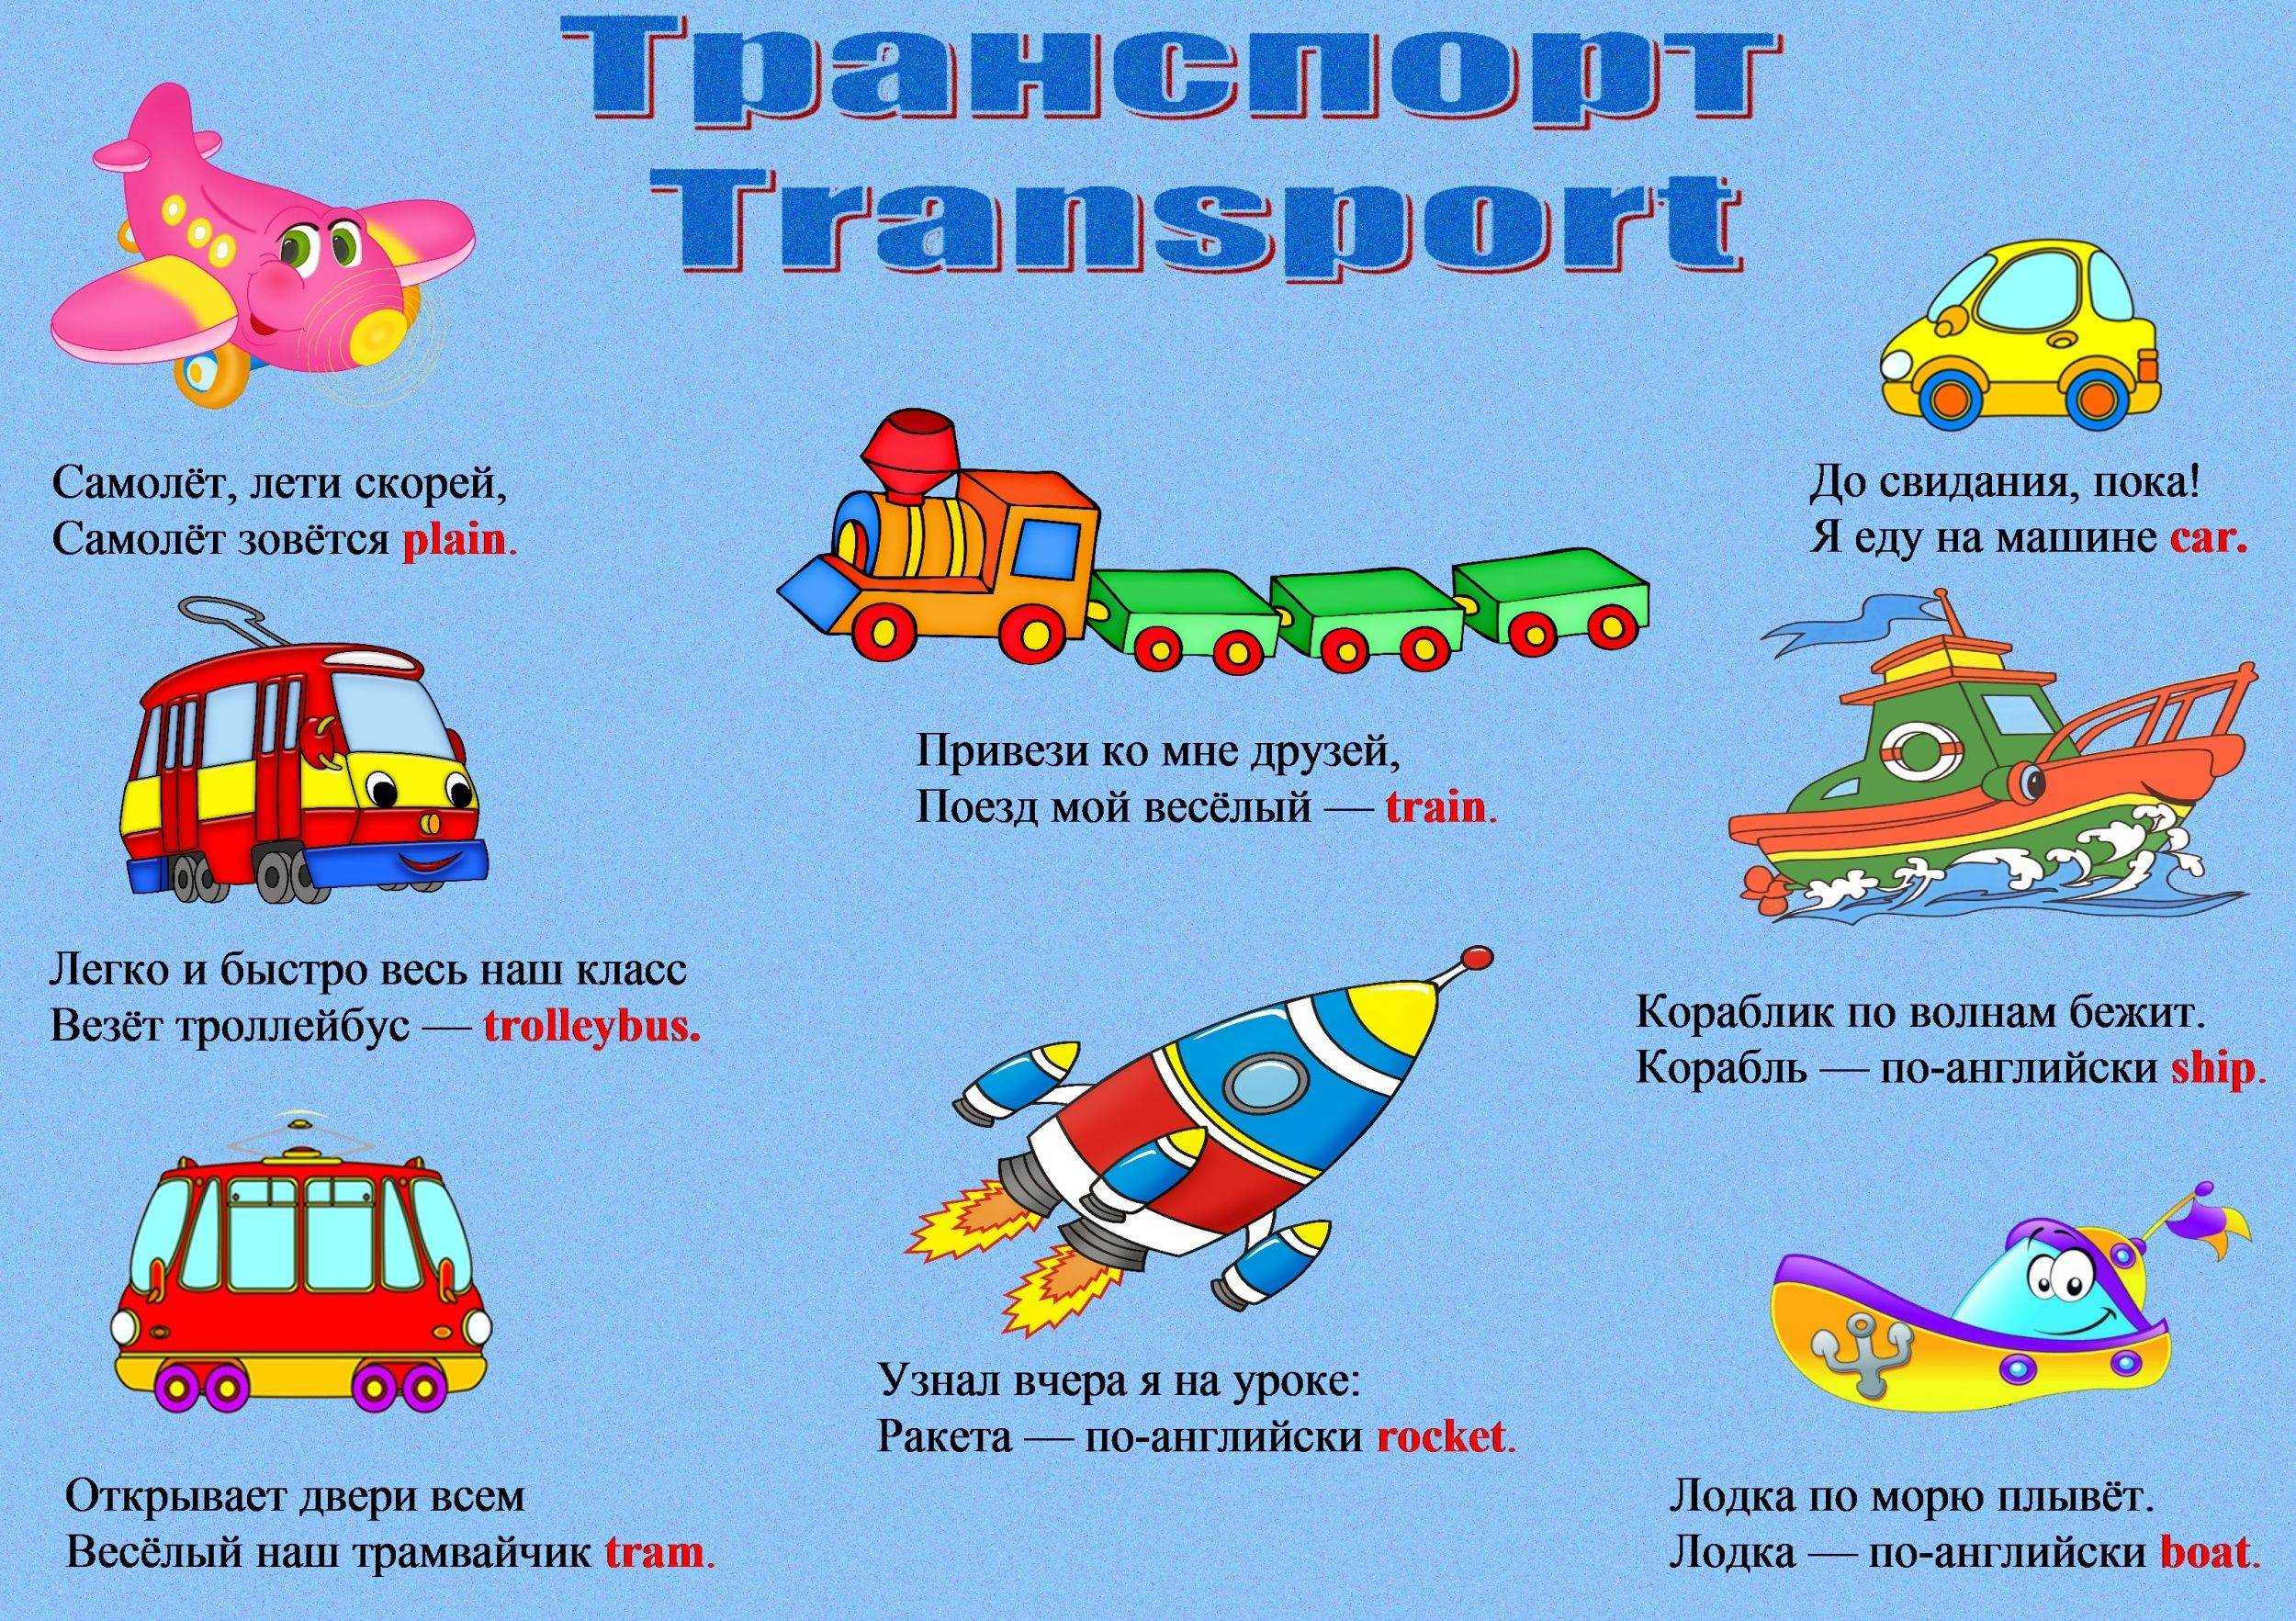 Какие бывают загадки про транспорт? :: syl.ru